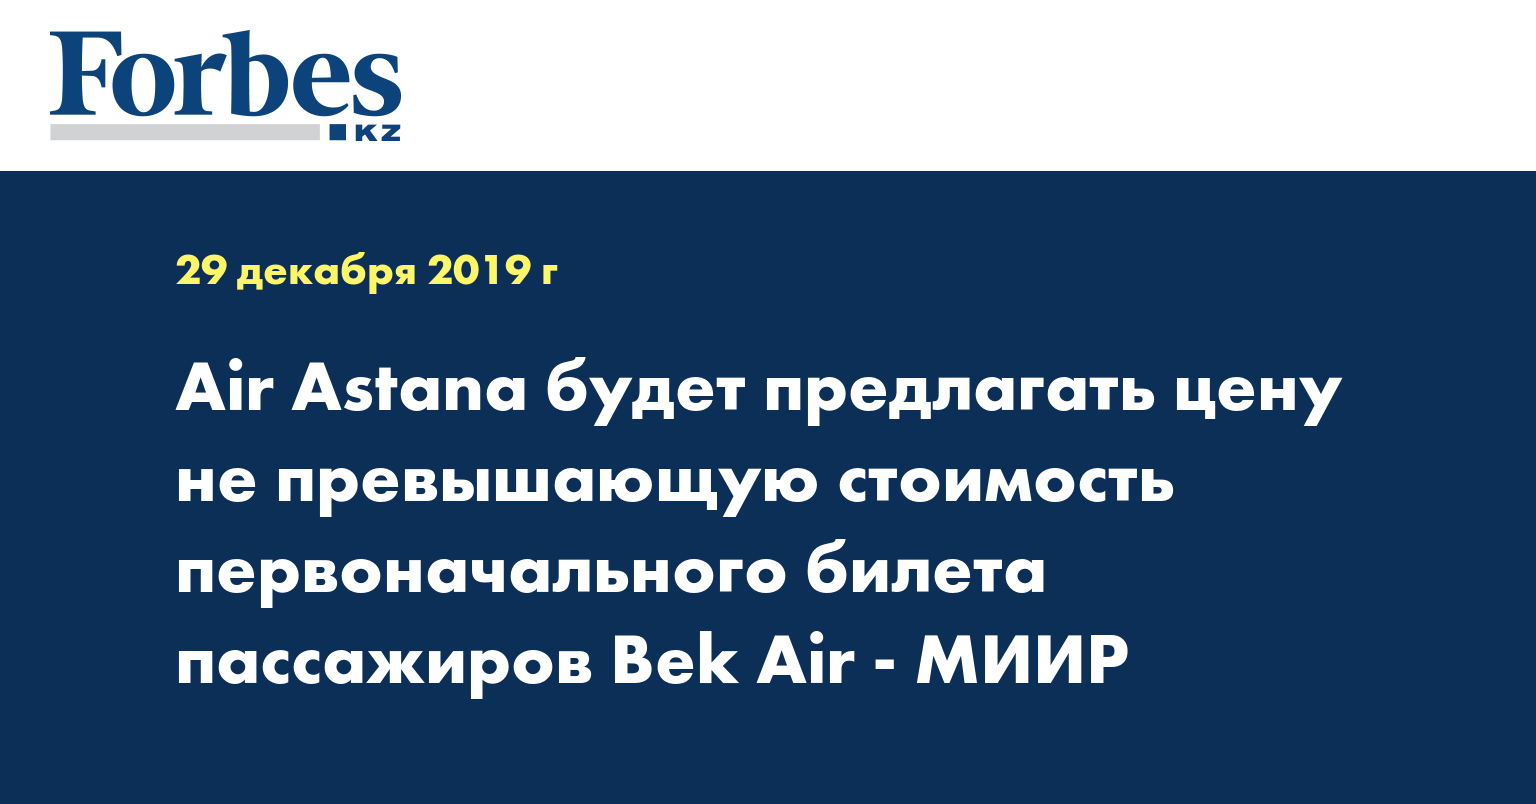 Air Astana будет предлагать цену, не превышающую стоимость первоначального билета Bek Air - МИИР